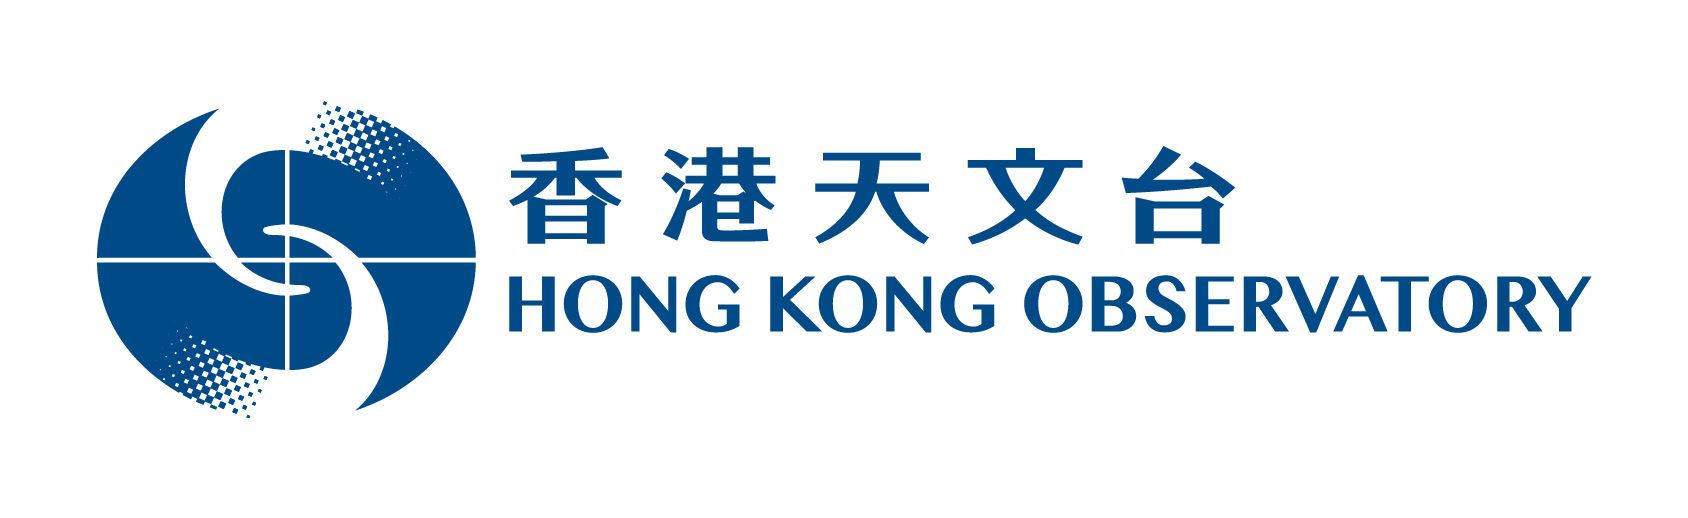 香港天文台标志